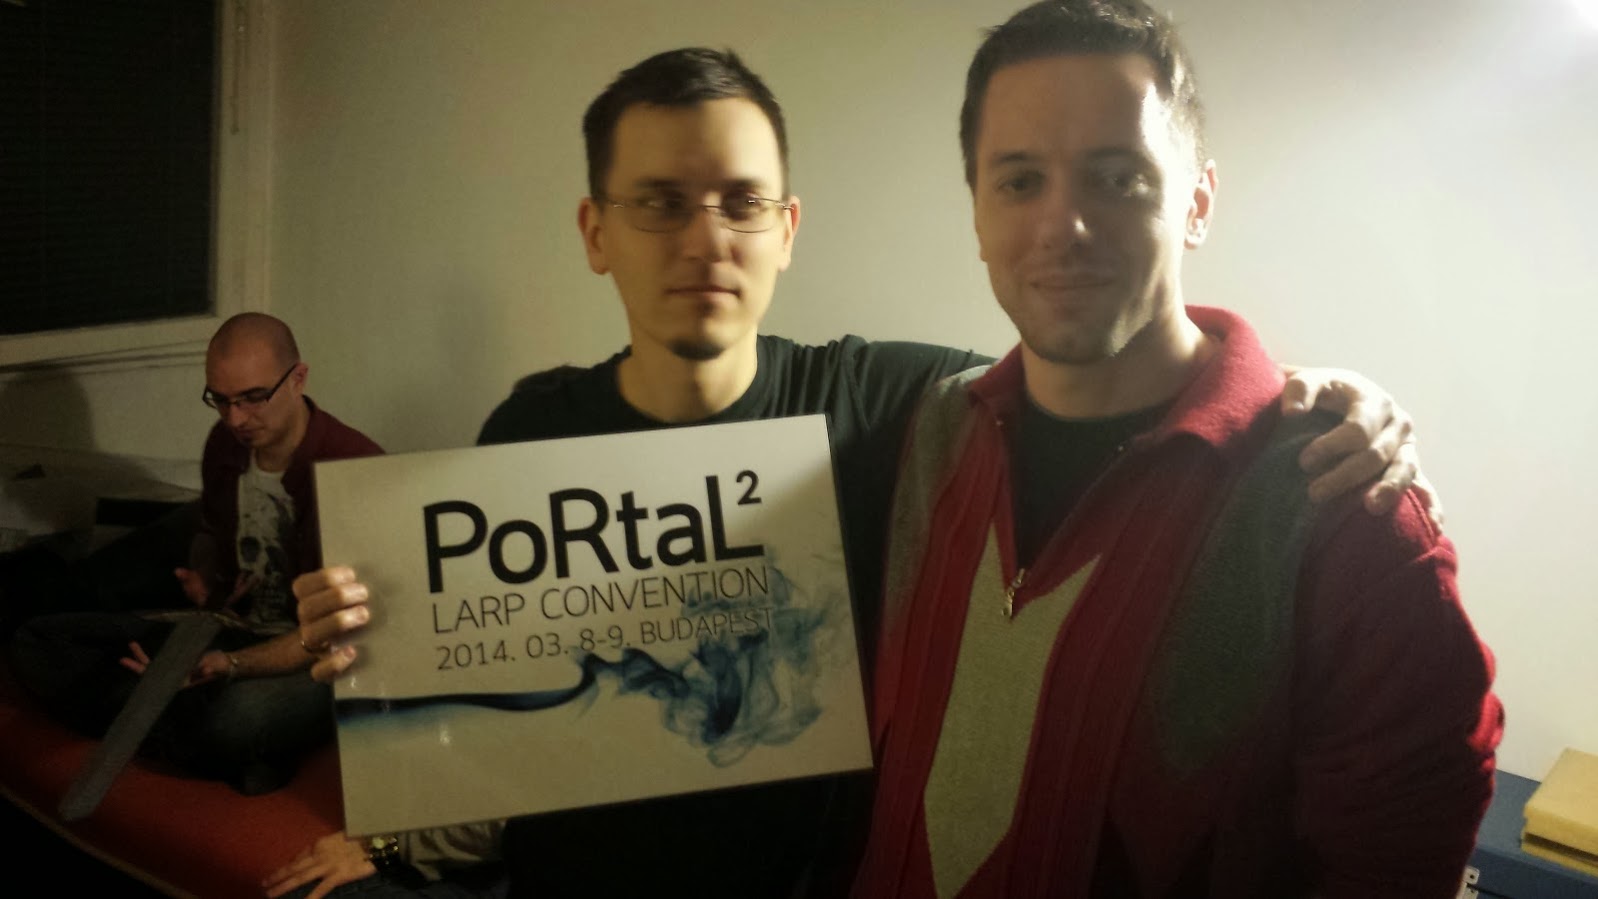 PoRtaL2 - How it was